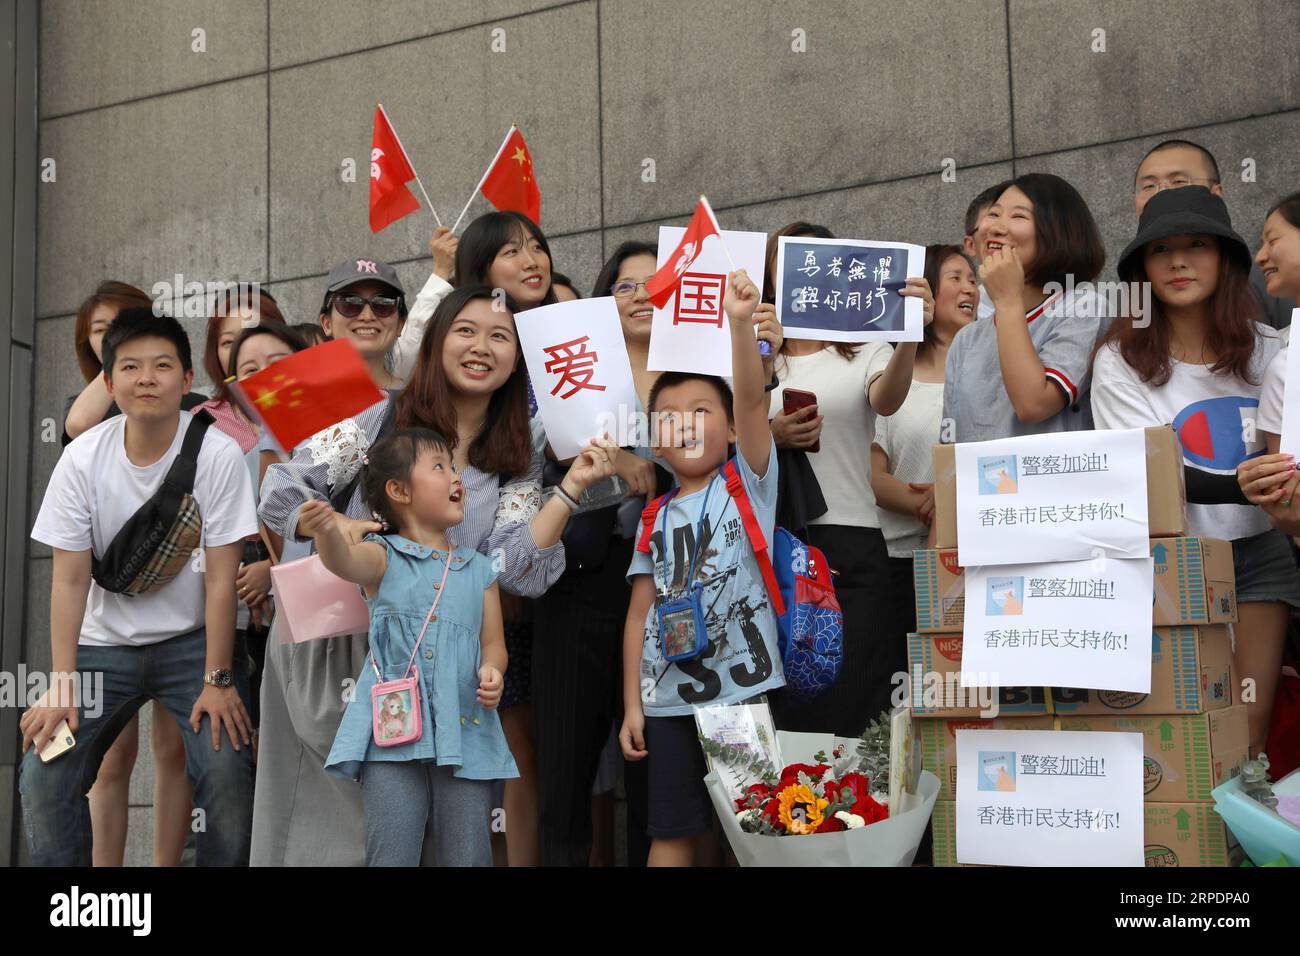 (190810) -- Hong Kong, 10 agosto 2019 -- i residenti si riuniscono al di fuori del quartier generale della polizia di Hong Kong per offrire beni e carte di benedizione a Hong Kong, nel sud della Cina, 9 agosto 2019. ) CINA-HONG KONG-RESIDENTI-POLIZIA-SOSTEGNO (CN) WUXXIAOCHU PUBLICATIONXNOTXINXCHN Foto Stock